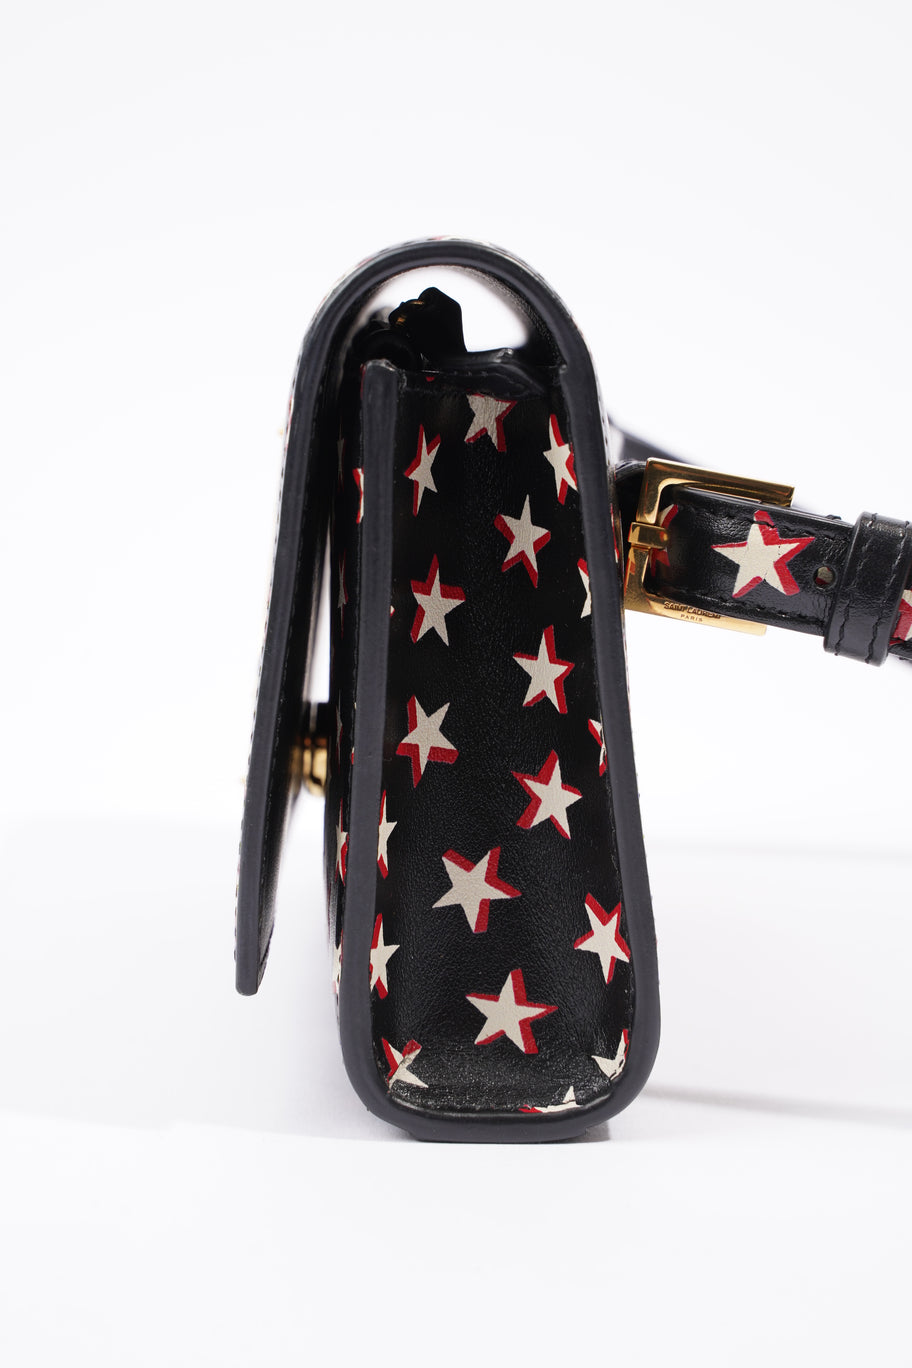 Kate Belt Bag Black / Stars Leather Image 4